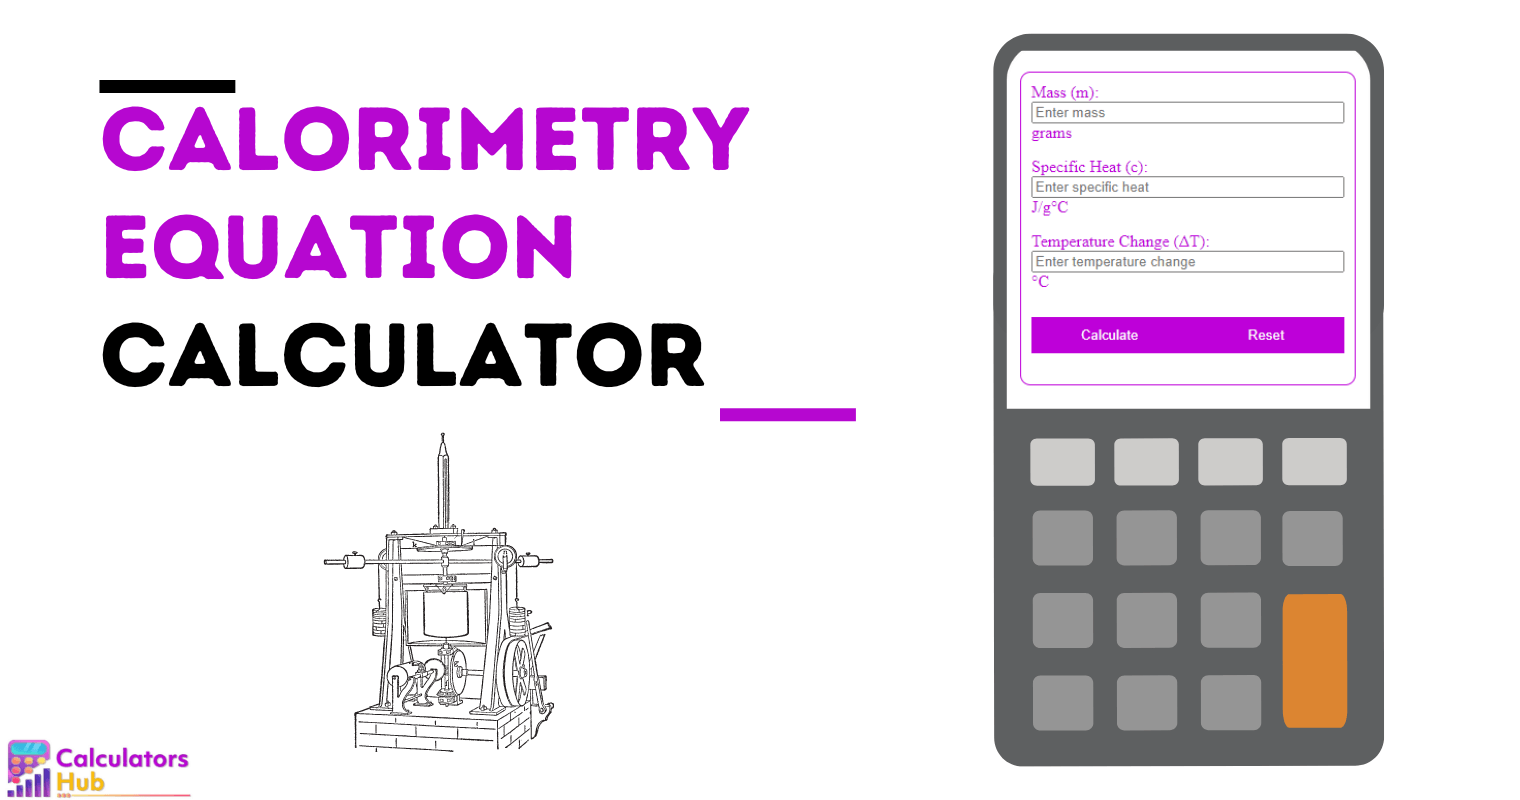 Calorimetry Equation Calculator